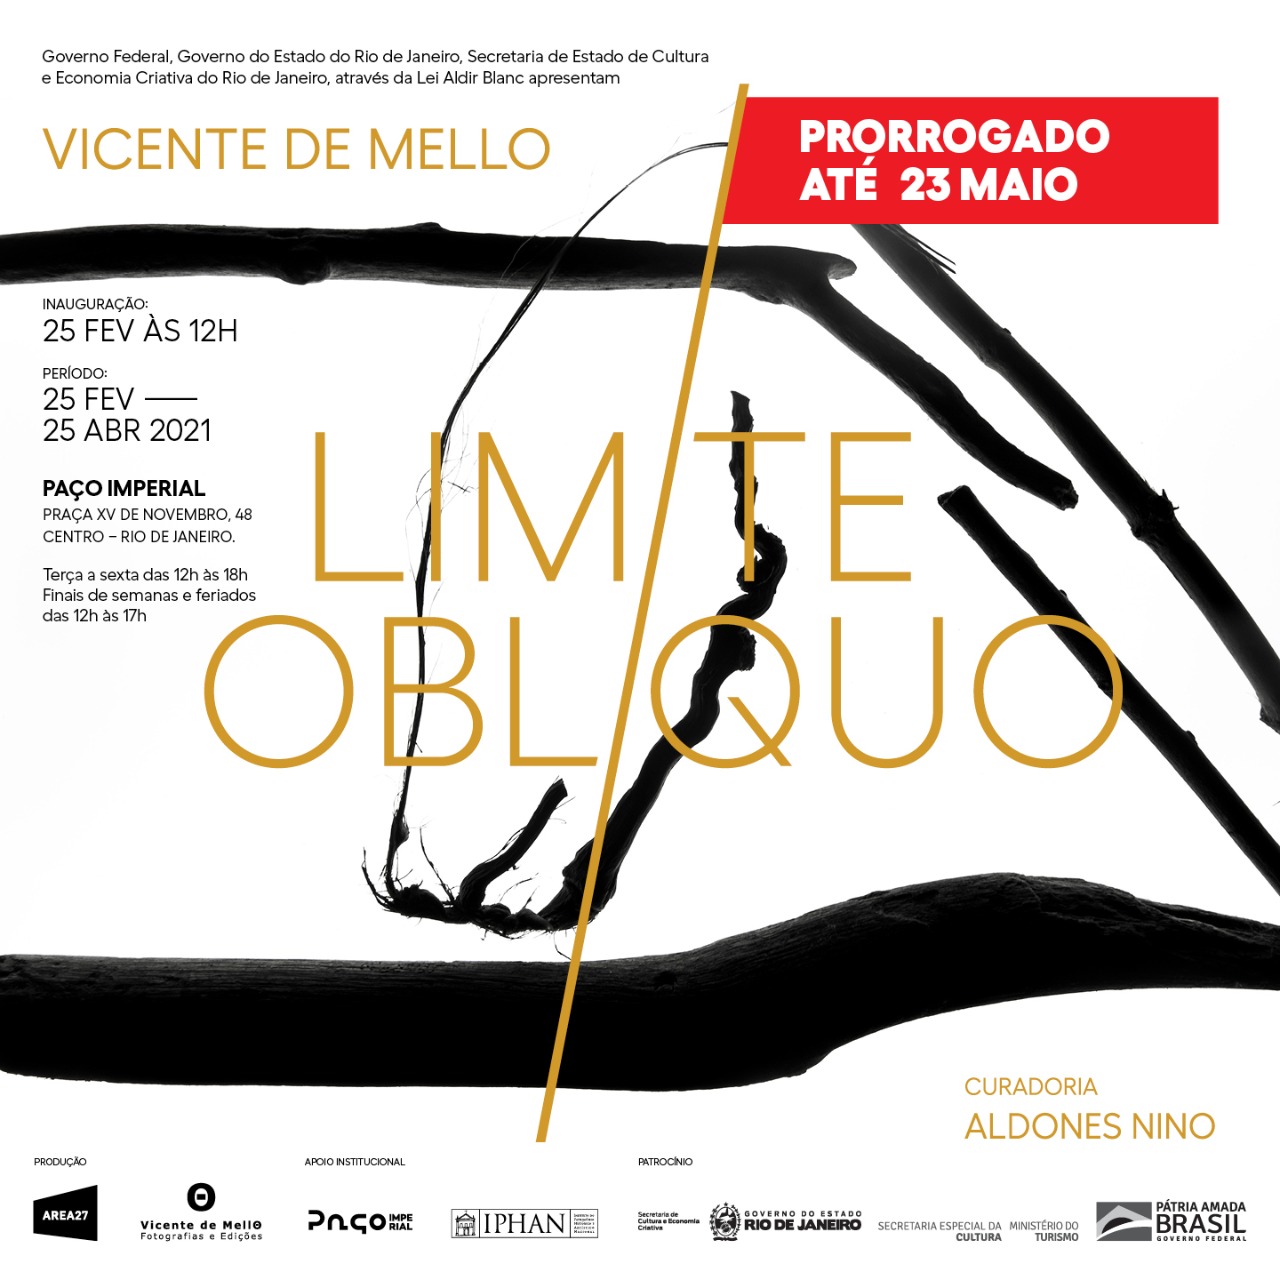 Την περασμένη εβδομάδα - Έκθεση "Limite Oblíquo" από τον φωτογράφο Vicente de Mello στο Paço Imperial, πρόσκληση. Αποκάλυψη.